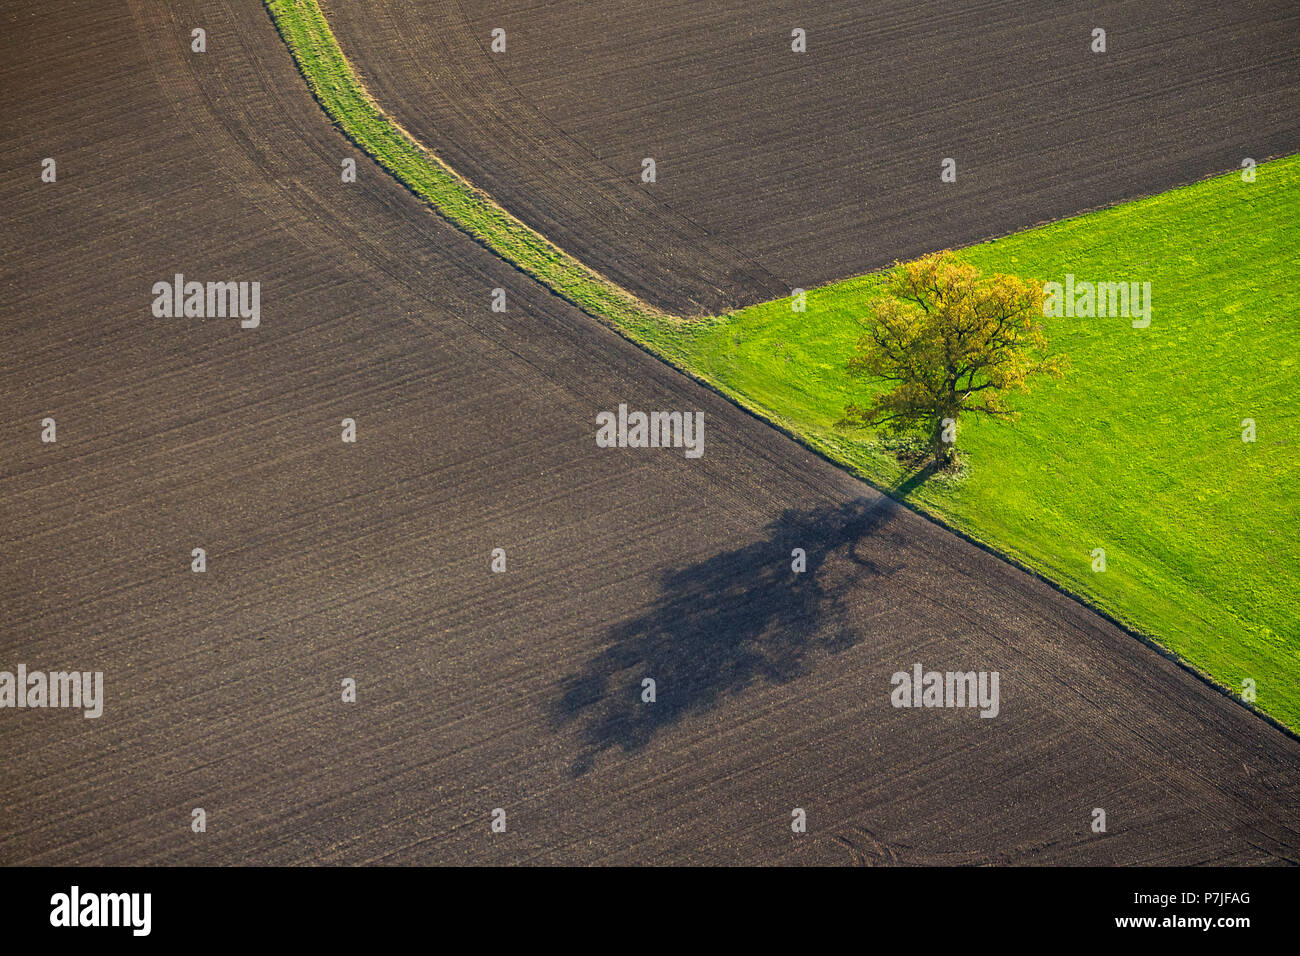 Arbre isolé avec ombre sur un pré entouré de champs récoltés, Ruethen, Sauerland, Nordrhein-Westfalen, Germany, Europe Banque D'Images